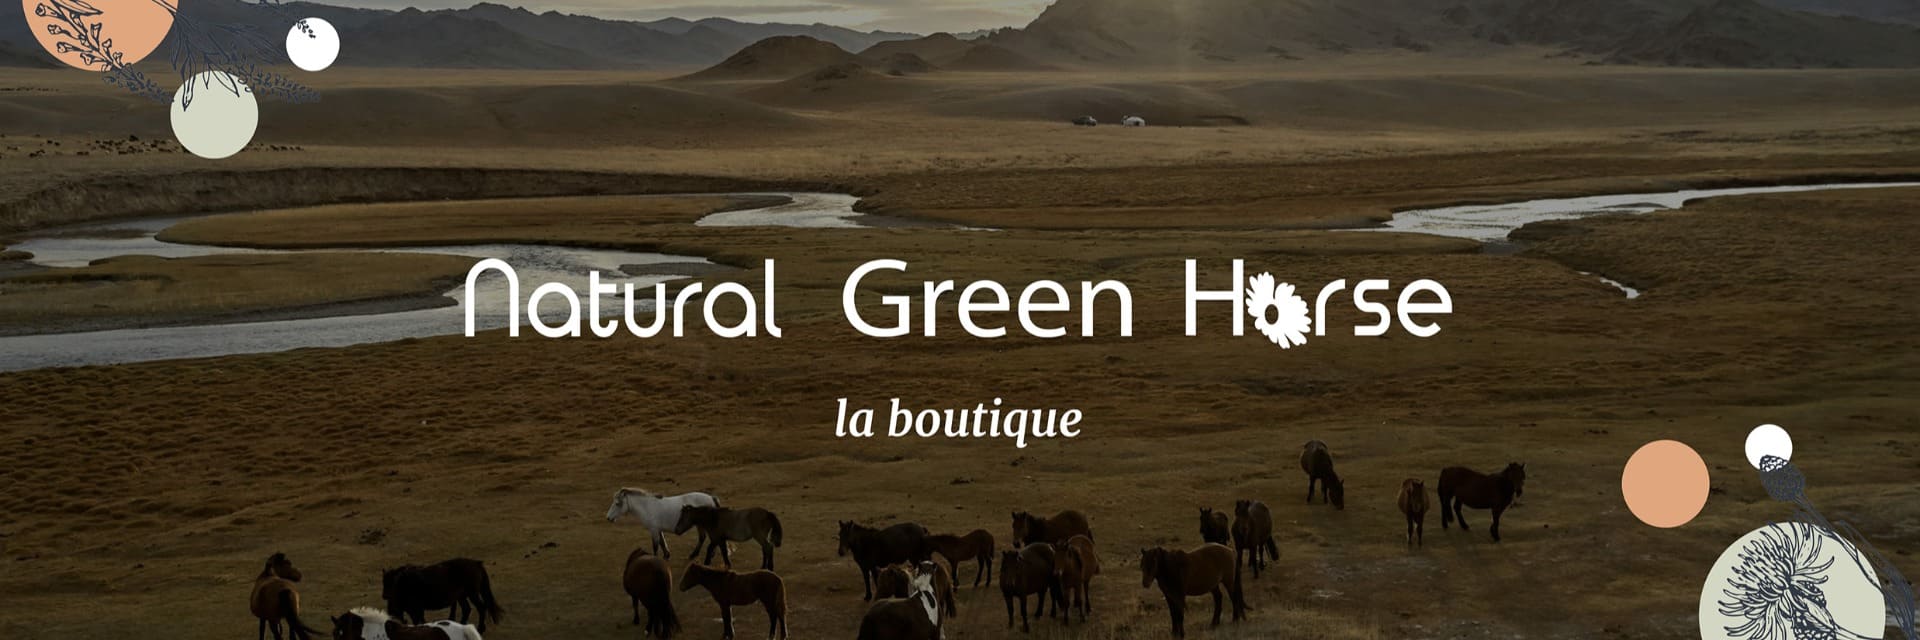 Boutique en ligne Natural Green Horse